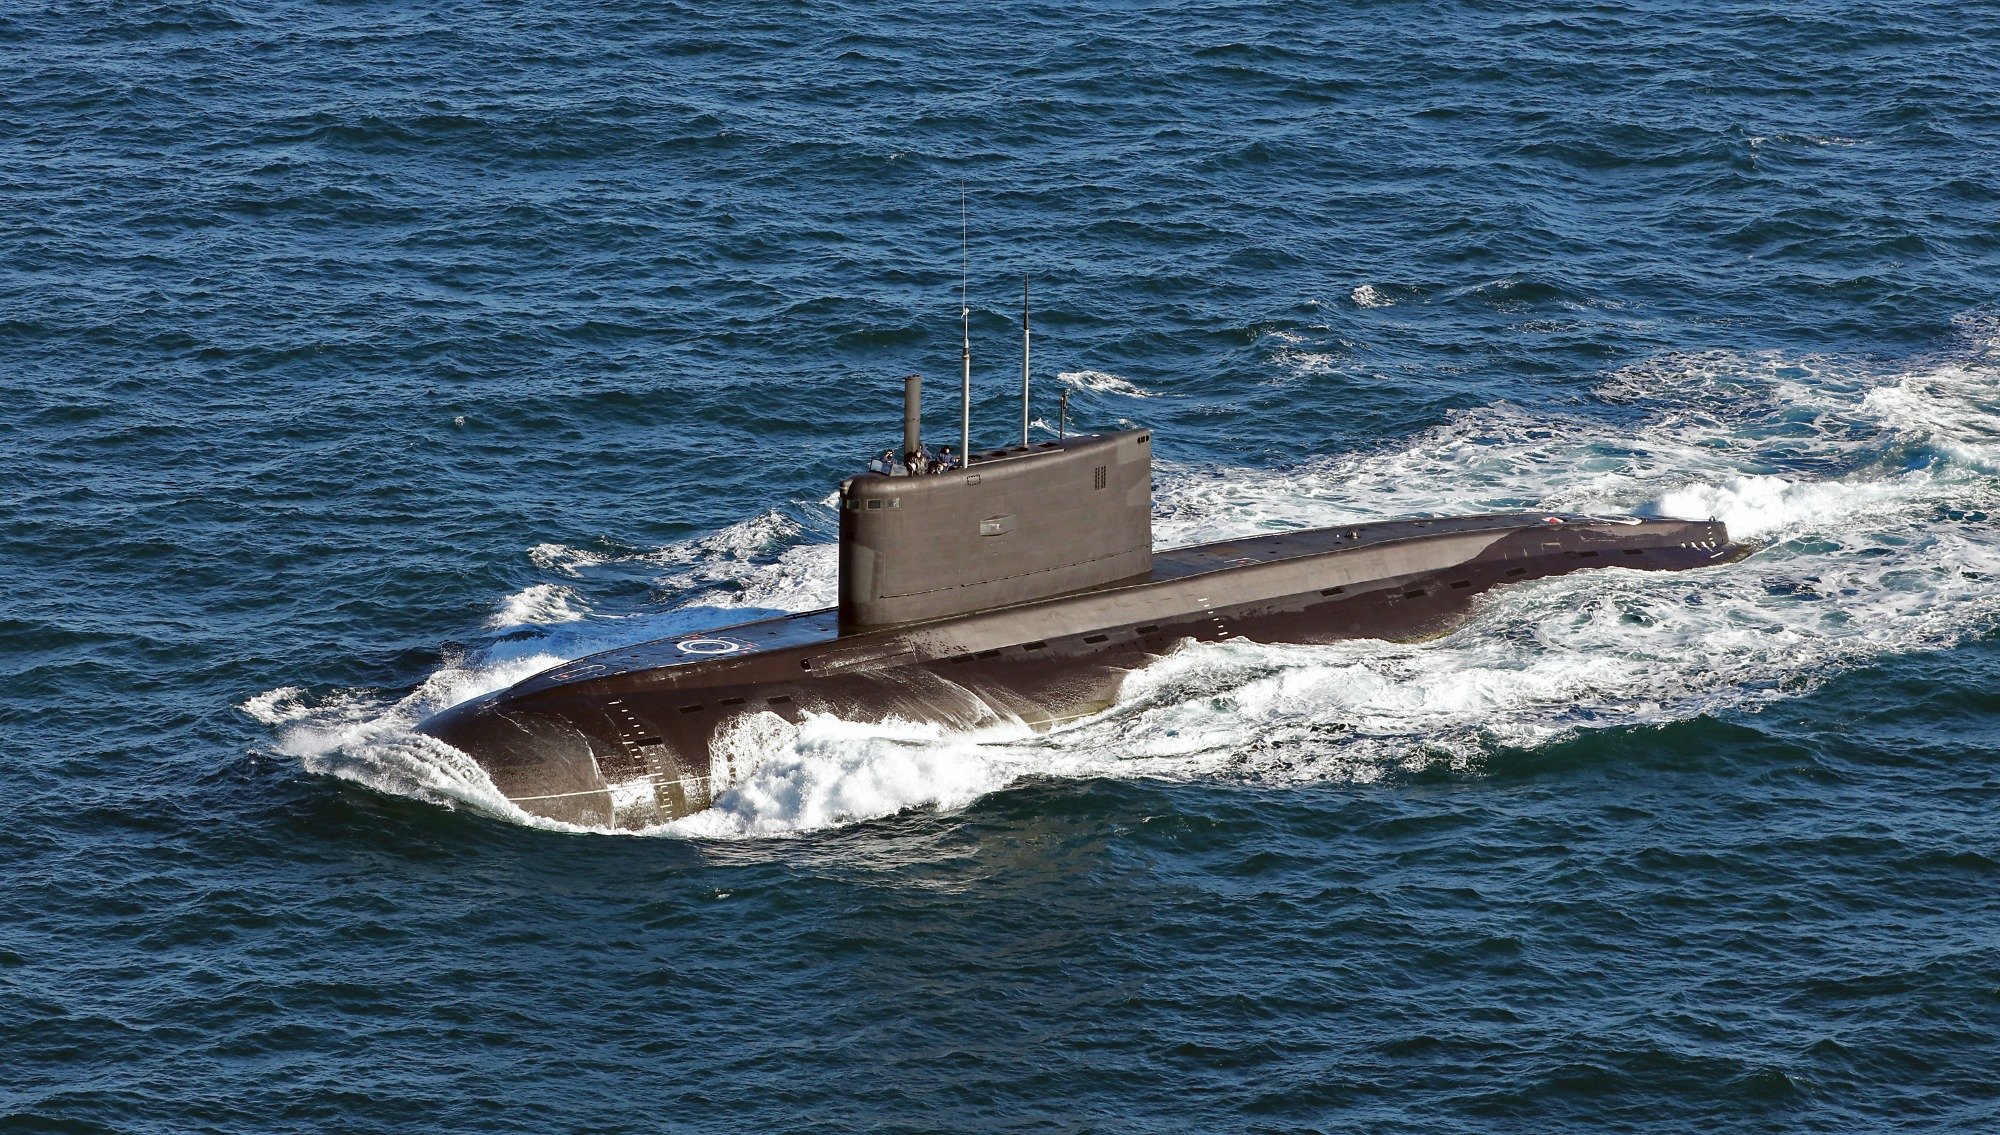 Βίντεο: Αγνοείται ρωσικό υποβρύχιο με 4 πυραύλους cruise στο Λίβανο εν μέσω έντασης Ρωσίας-ΗΠΑ;